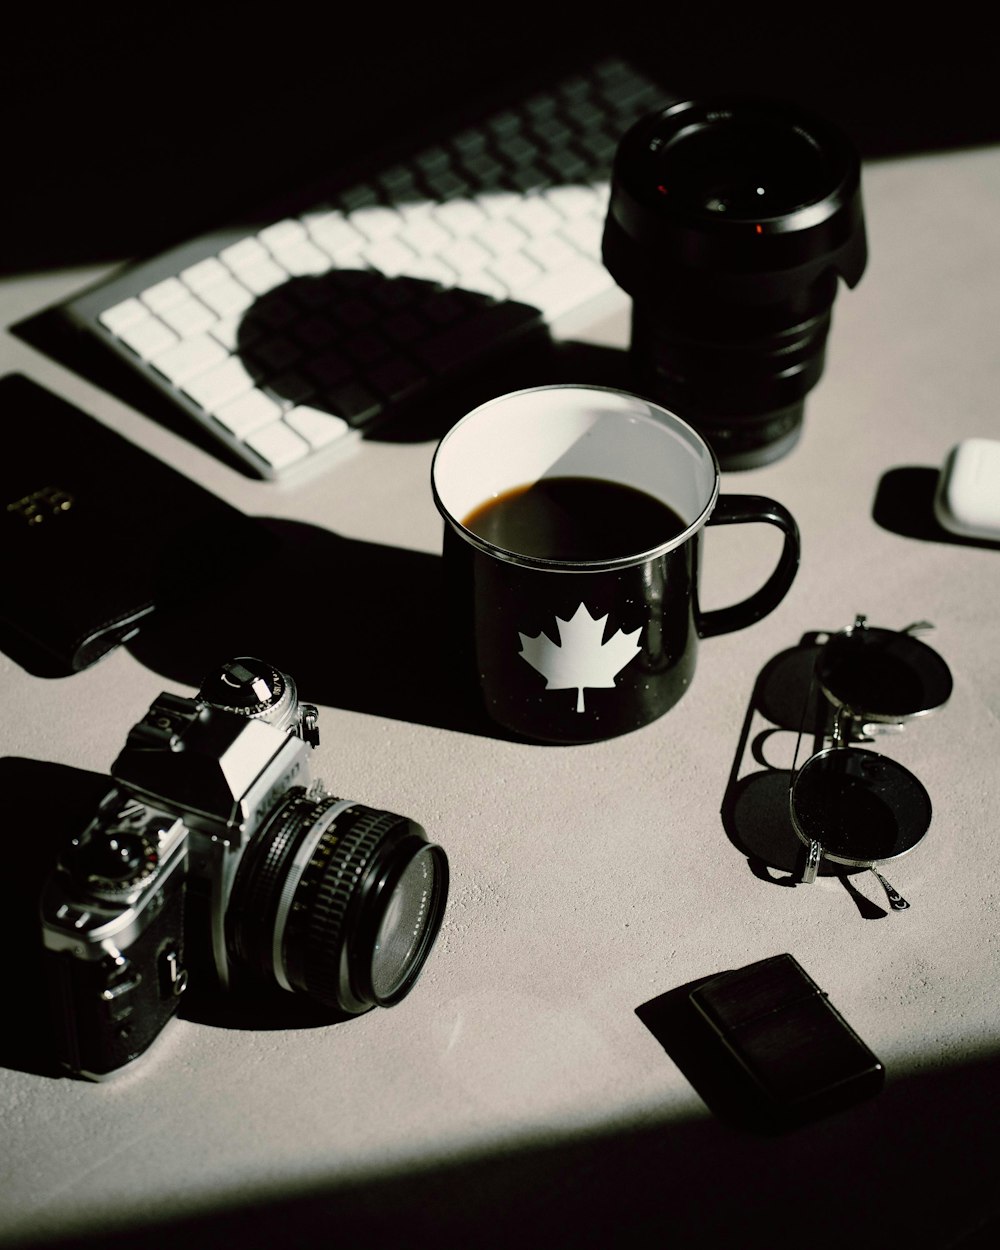 Fotocamera DSLR nera accanto a una tazza di ceramica nera sul tavolo